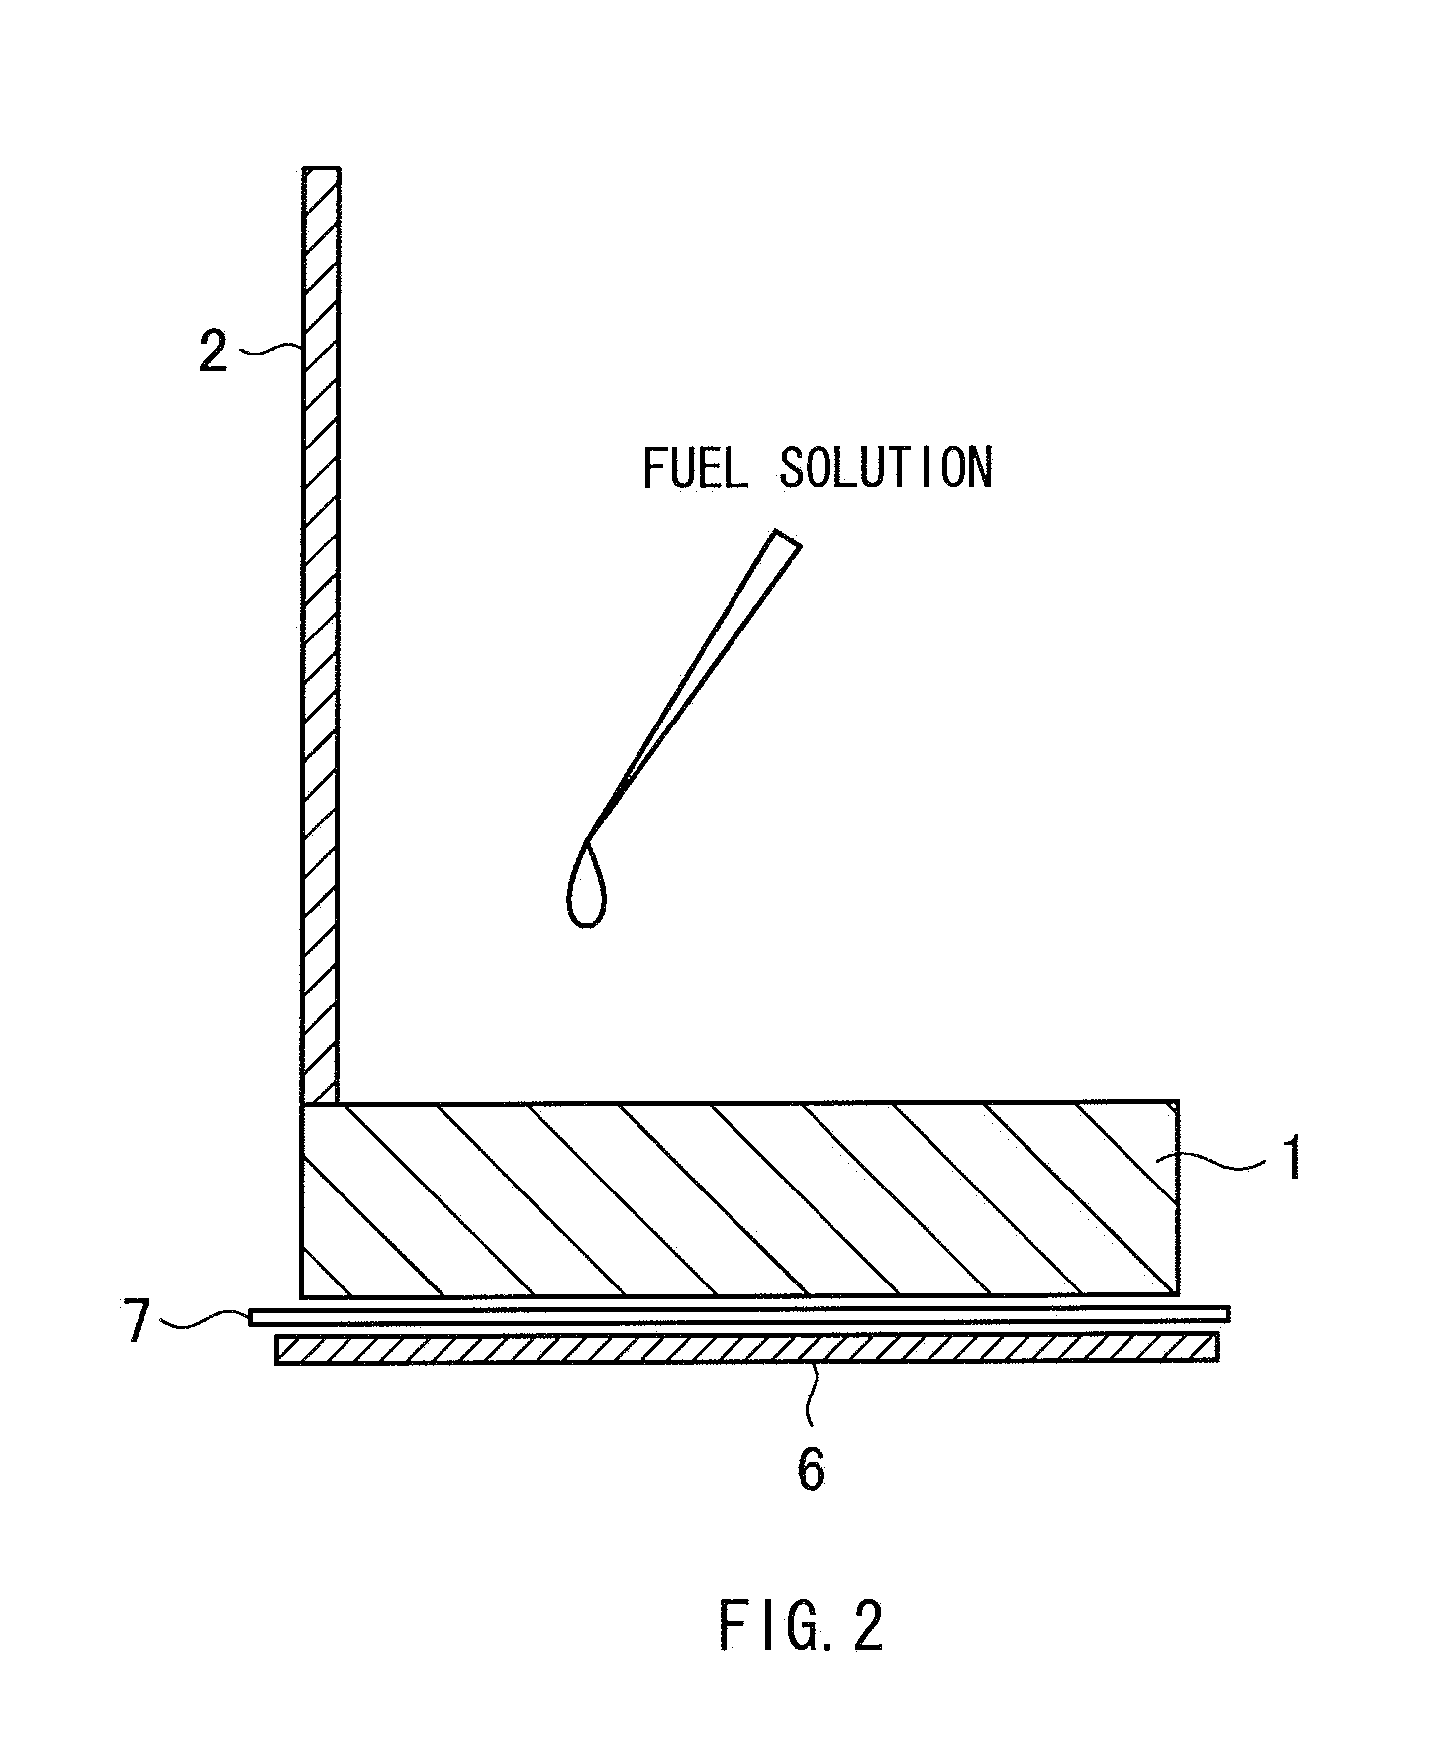 Electrolytic method of fuel